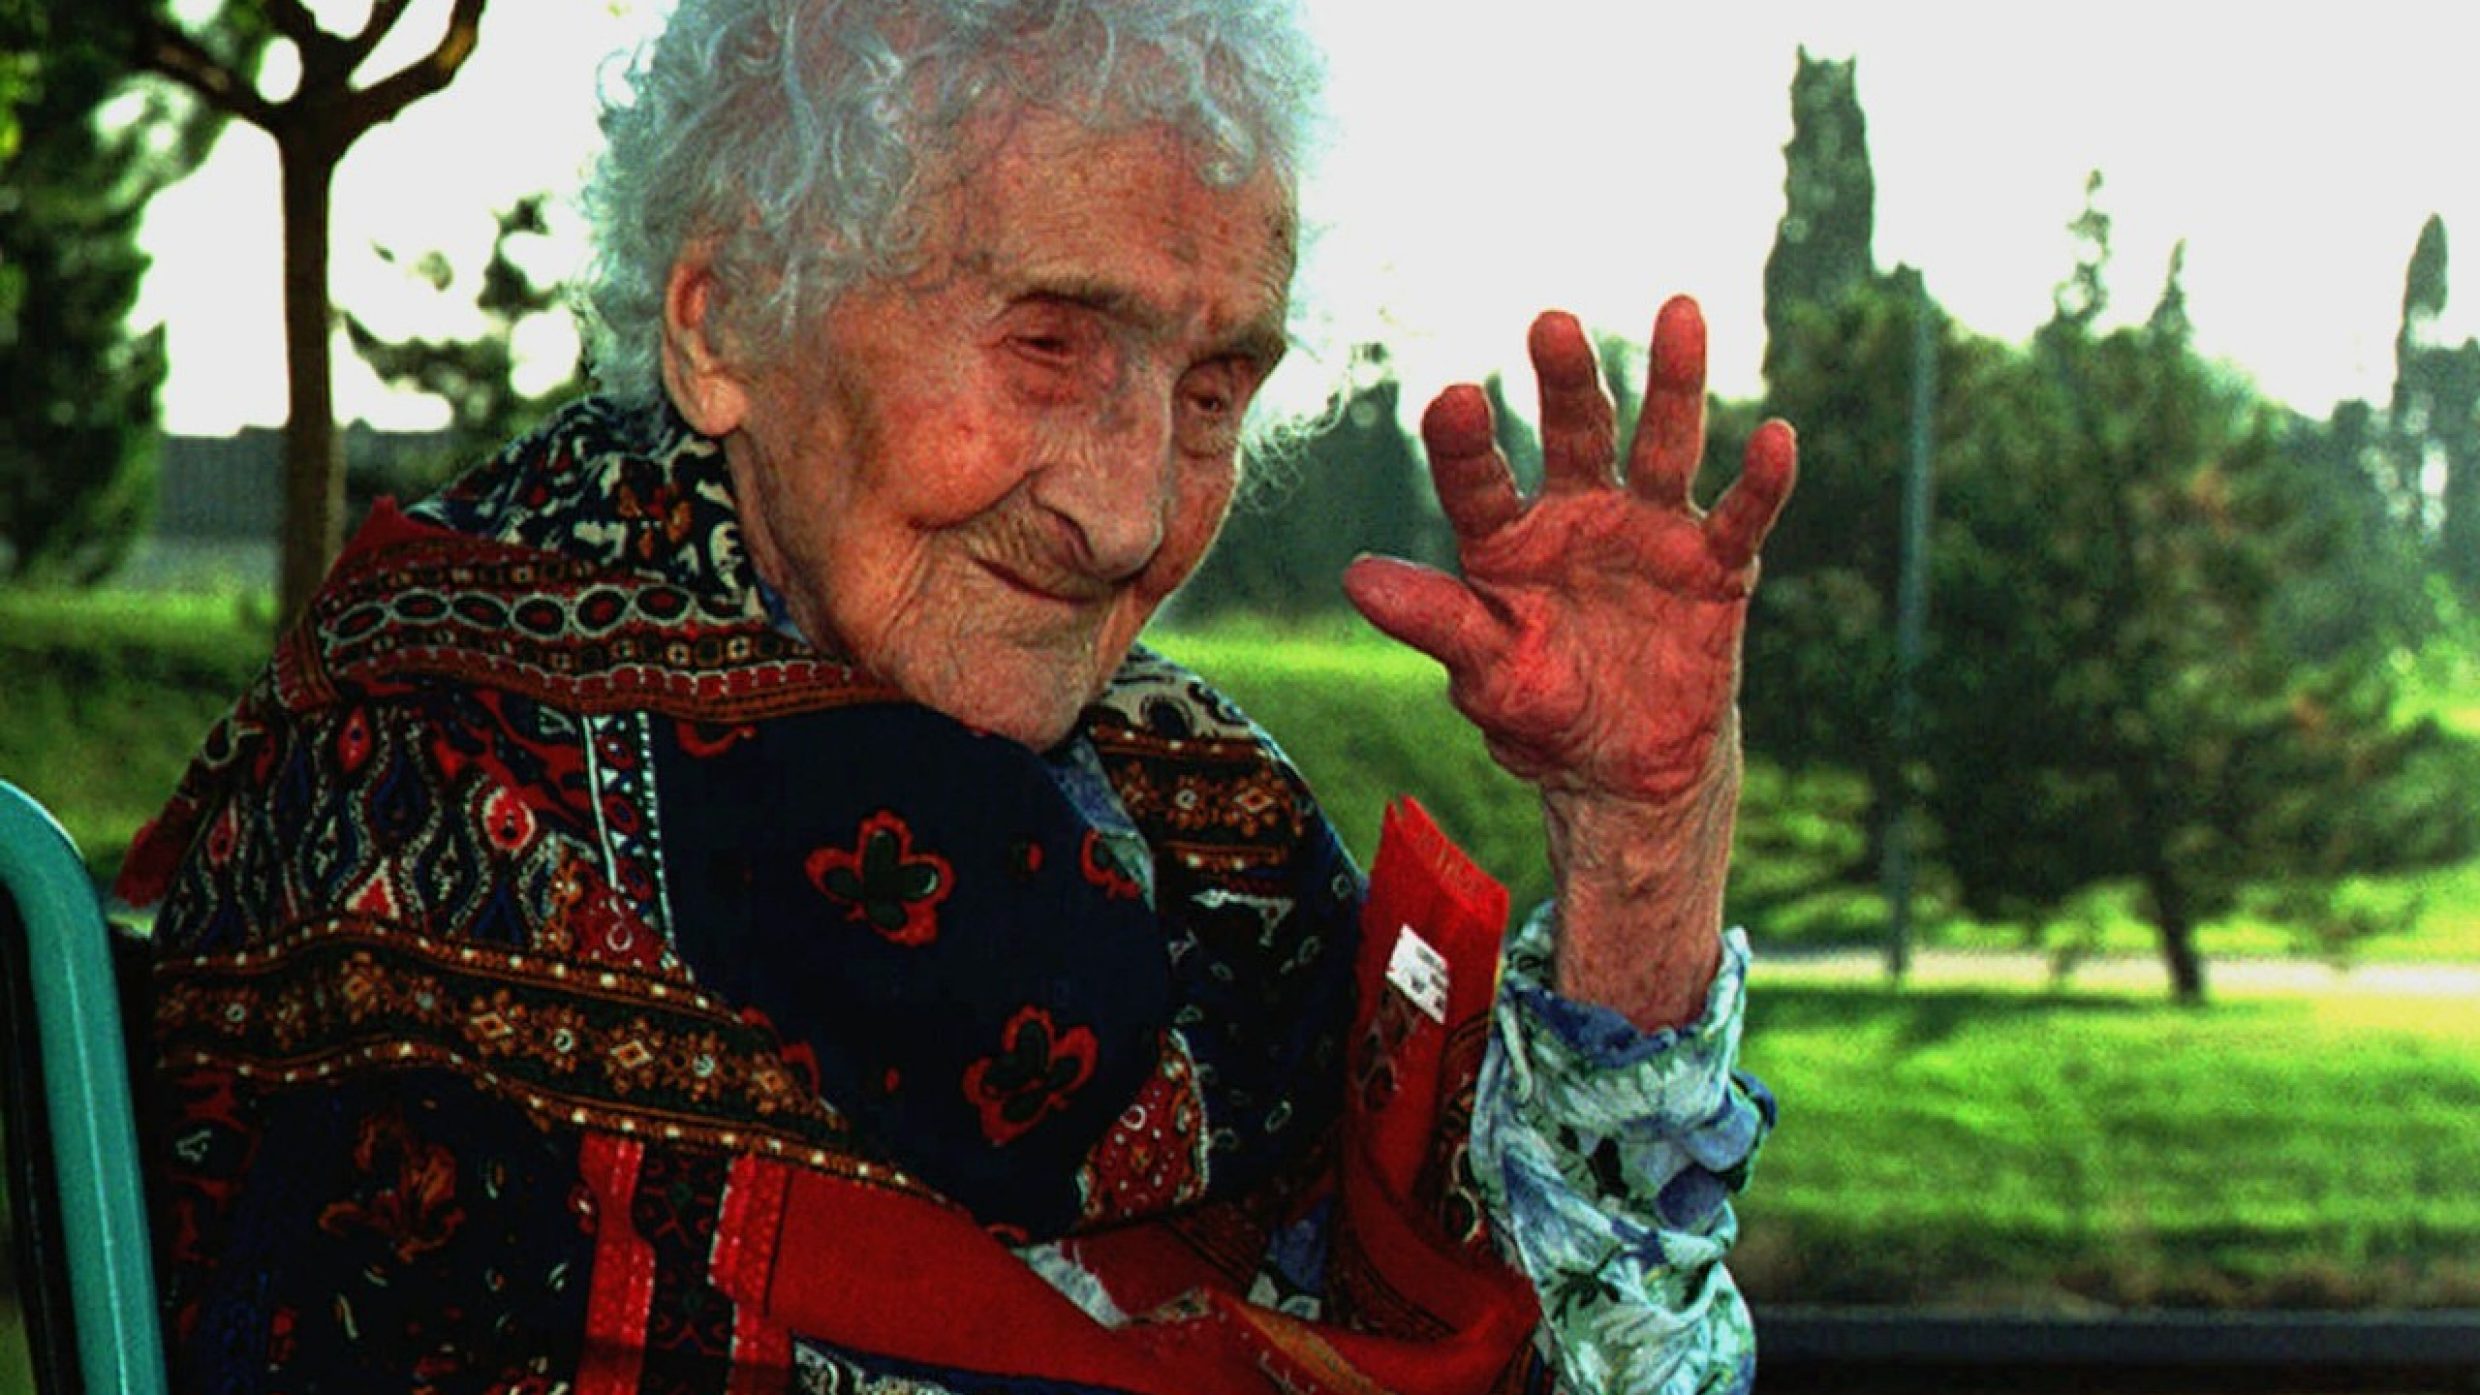 Mit einer durchschnittlichen Lebenserwartung von knapp 72 Jahren zählt der Mensch zu den Top Ten der ältesten Lebewesen. Den offiziellen Altersrekord hält die Französin Jeanne Calment mit 122 Jahren (1875-1997).